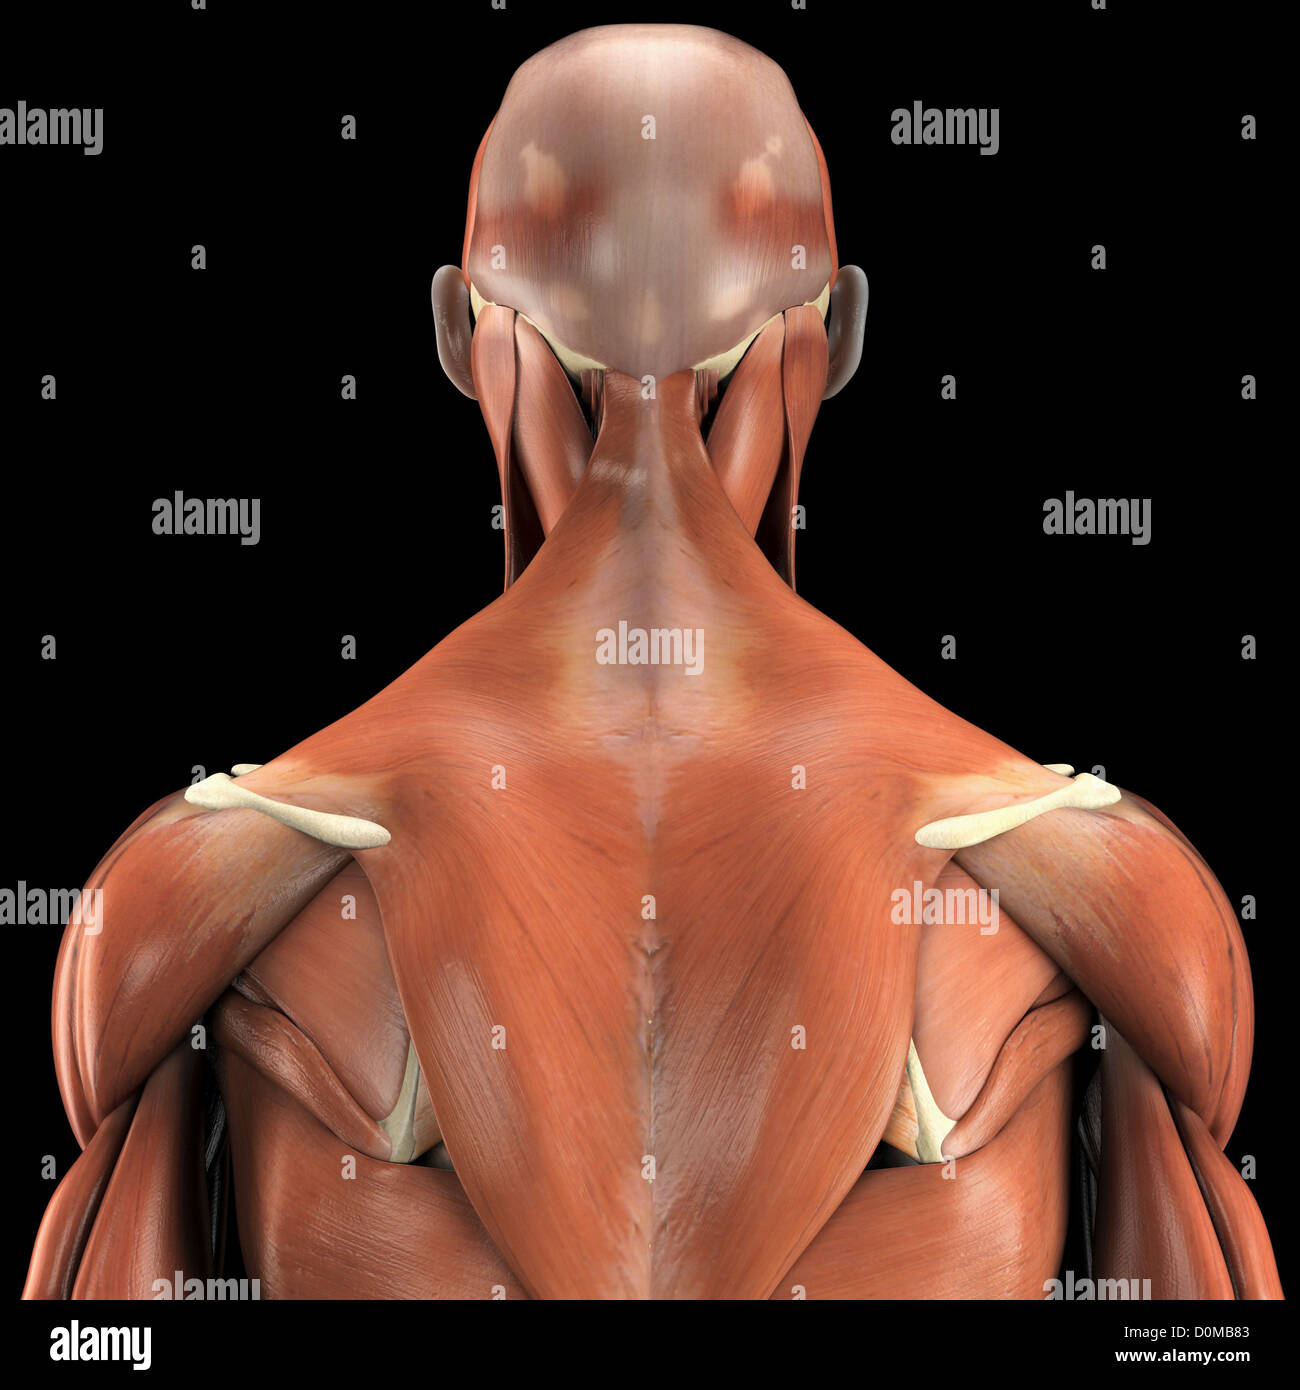 Ein menschliches Modell zeigt den Deltamuskel und Trapezius sowie Muskeln im Nacken und Gesicht. Stockfoto